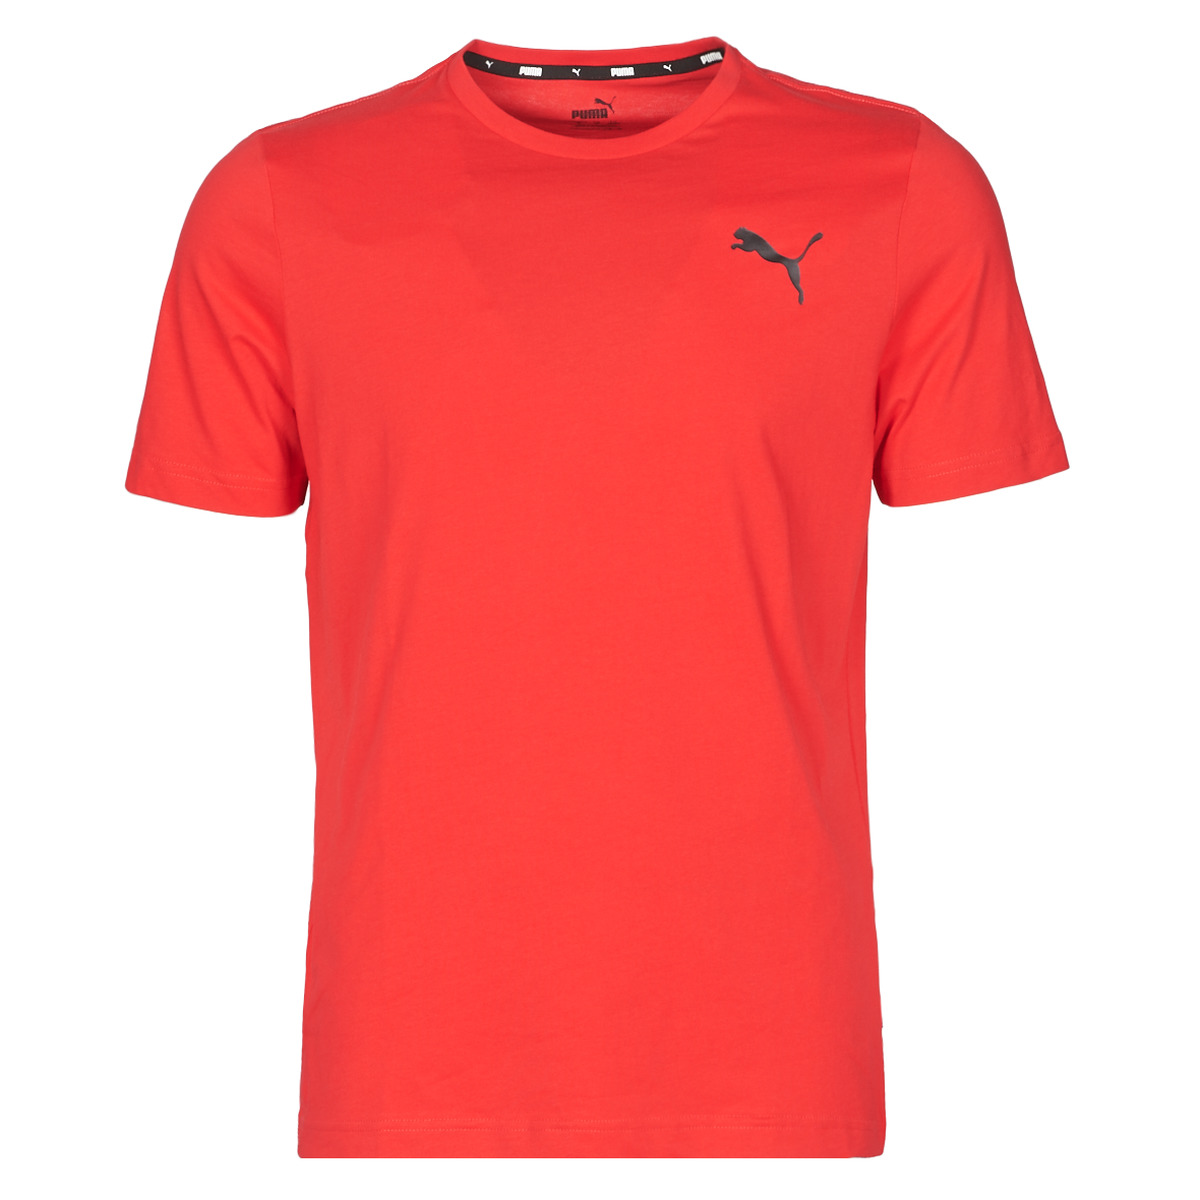 Puma Essentials Small Logo T-Shirt